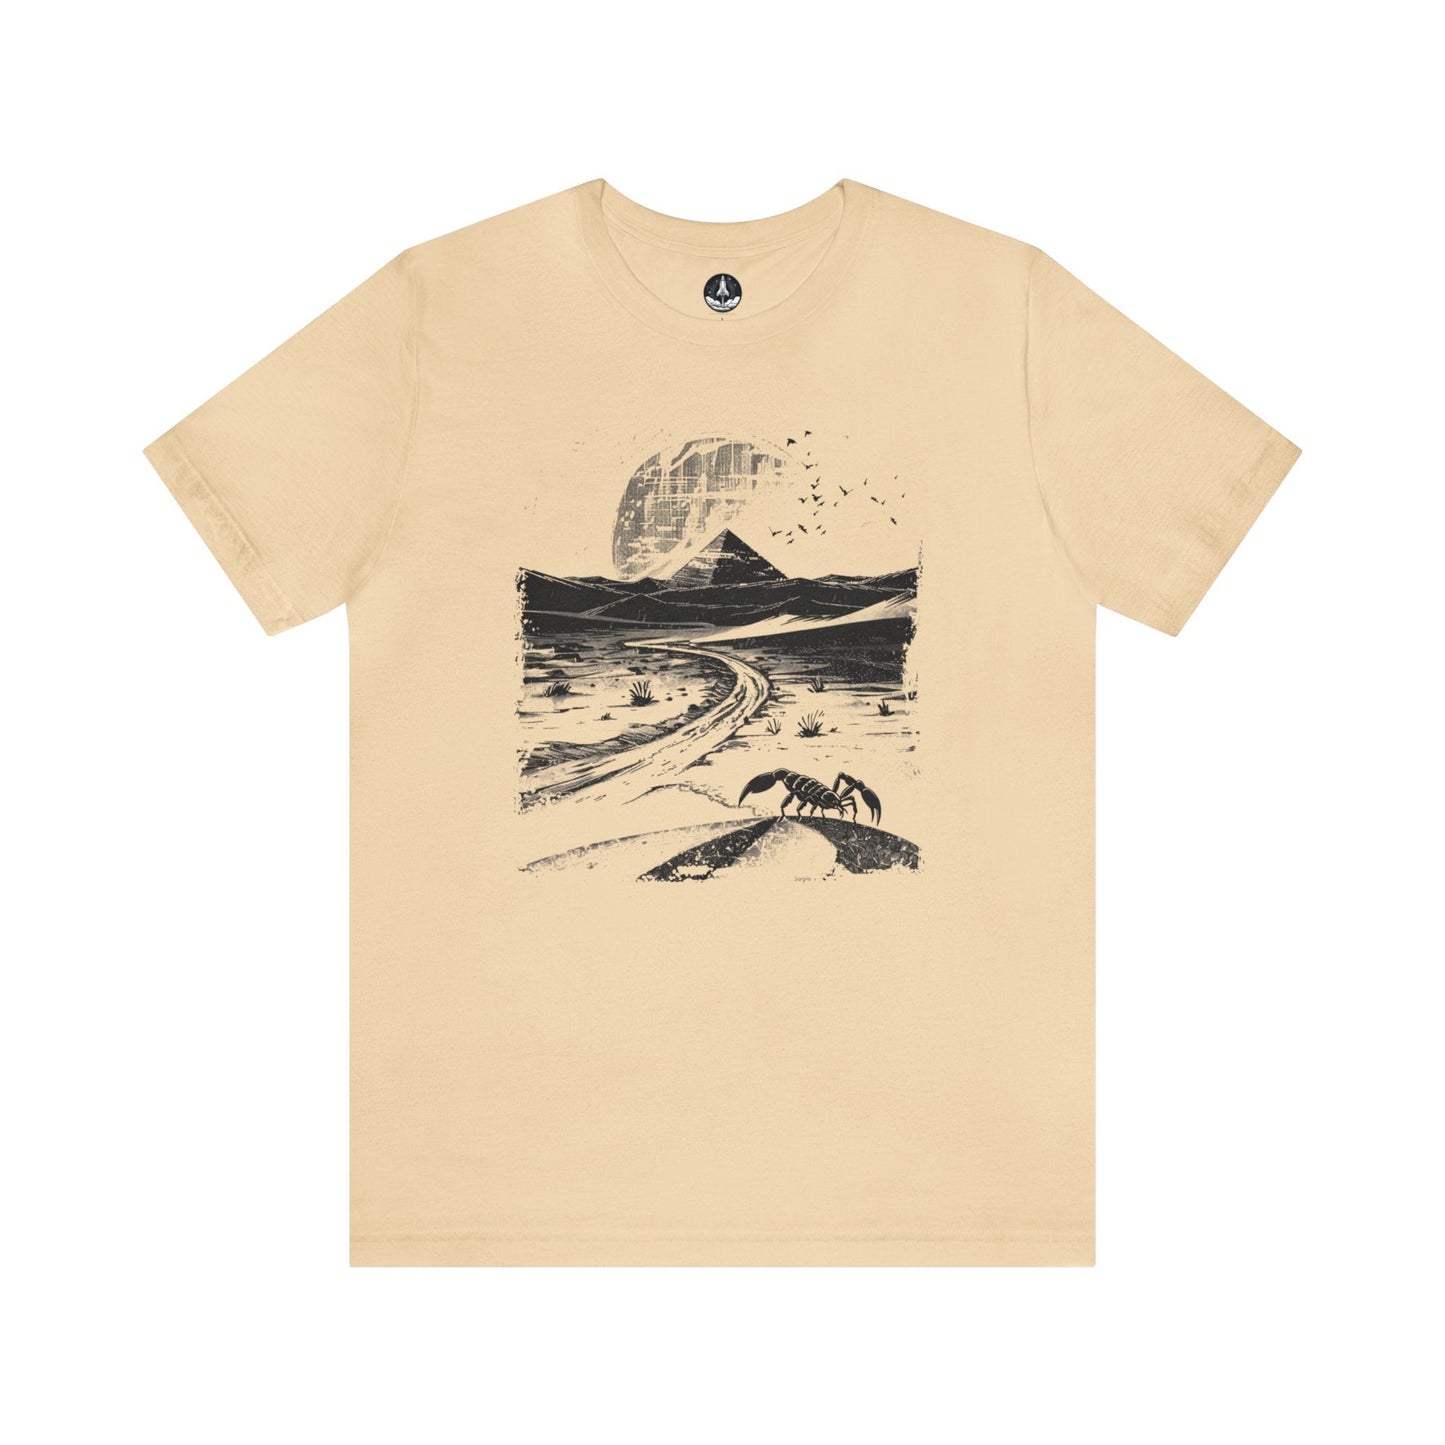 T-Shirt Soft Cream / S The Brave Warrior Scorpio TShirt